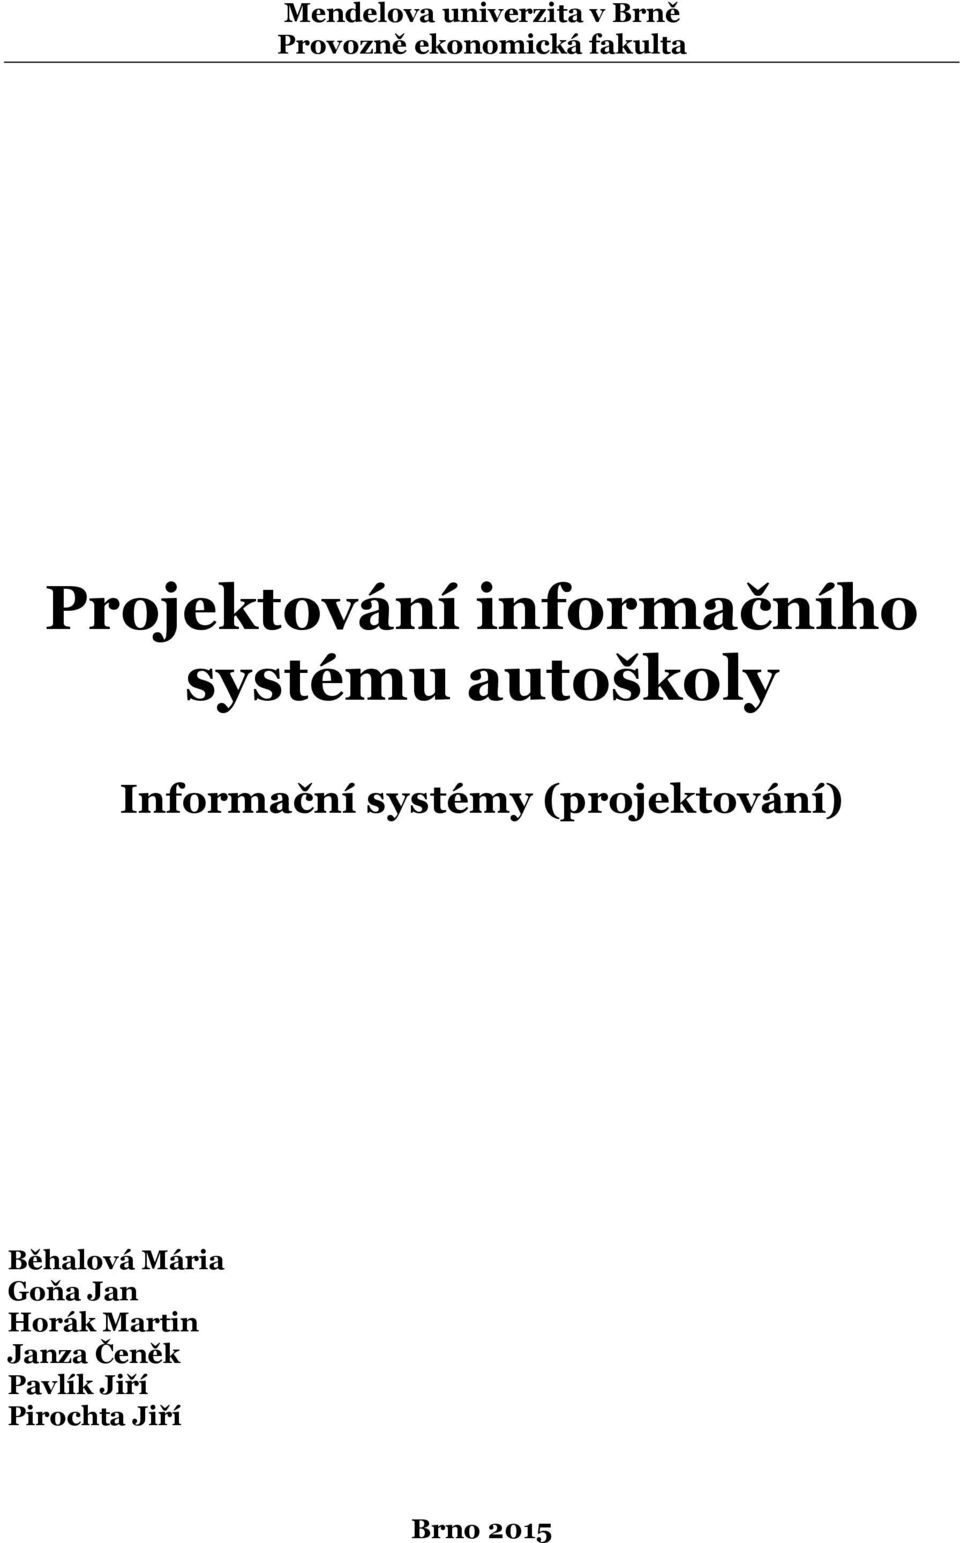 Informační systémy (projektování) Běhalová Mária Goňa